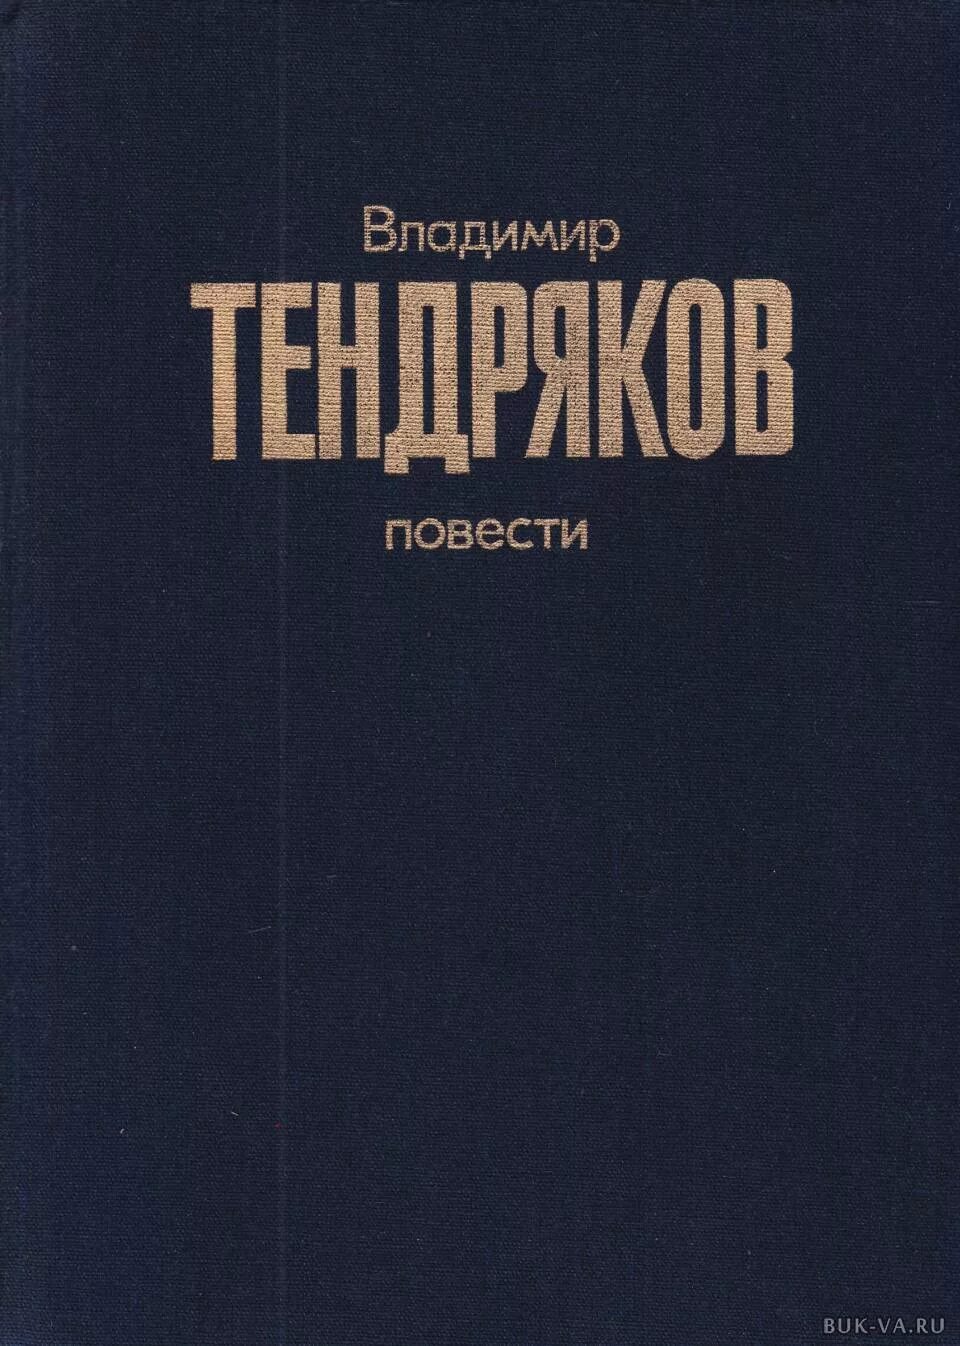 Книги издательства Советский писатель.